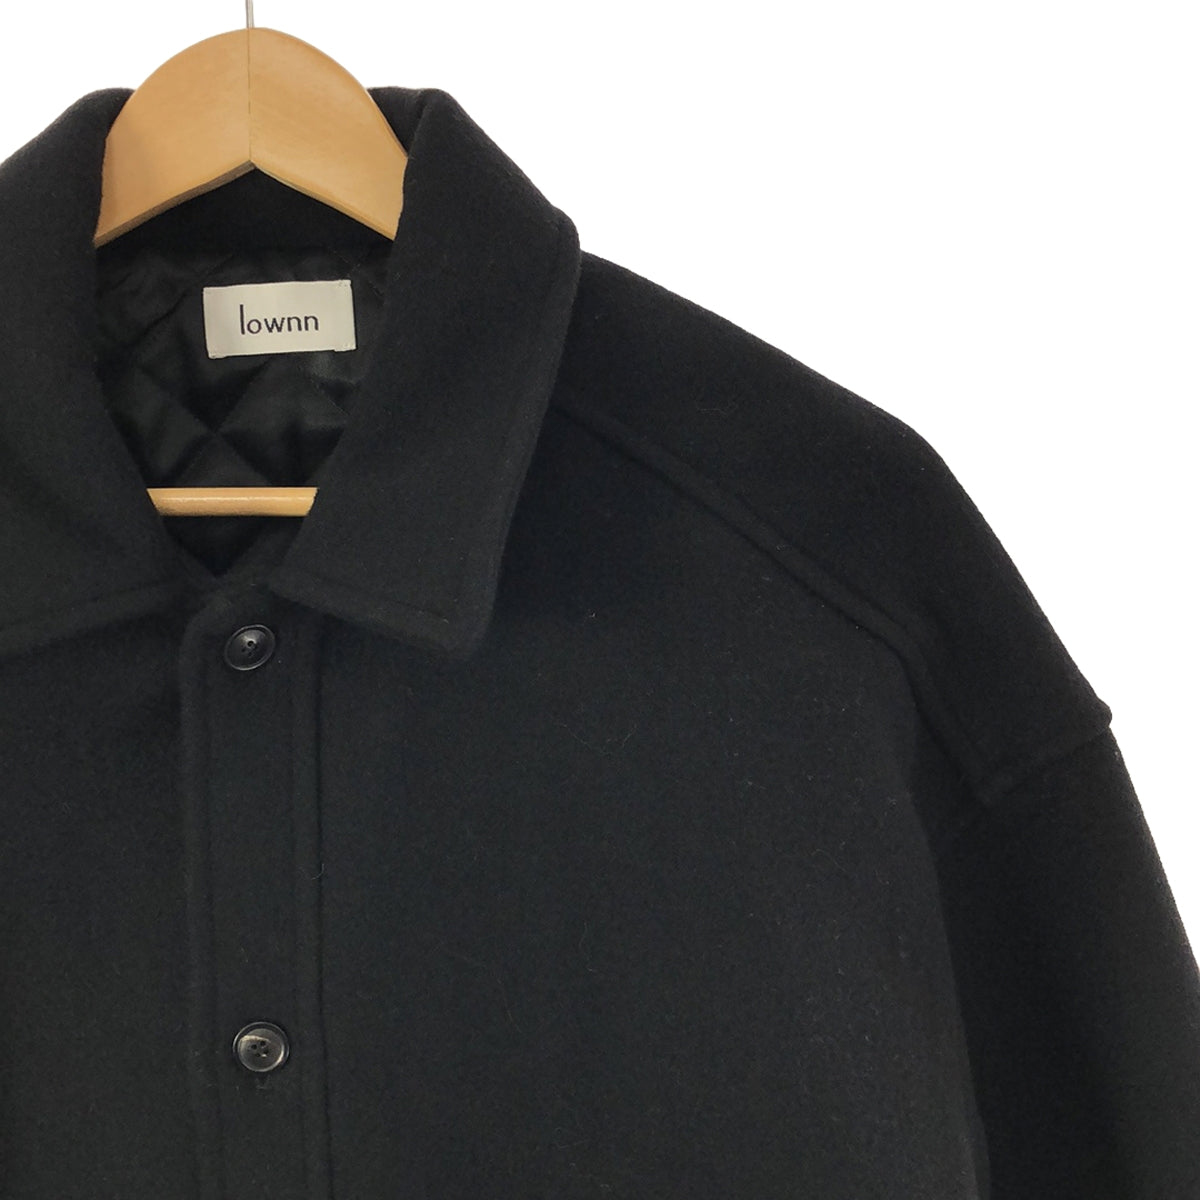 LOWNN / ローン | QUILTED SHIRT COAT ウール カシミヤ メルトン キルティング シャツ ジャケット ショートコート |  44 | メンズ